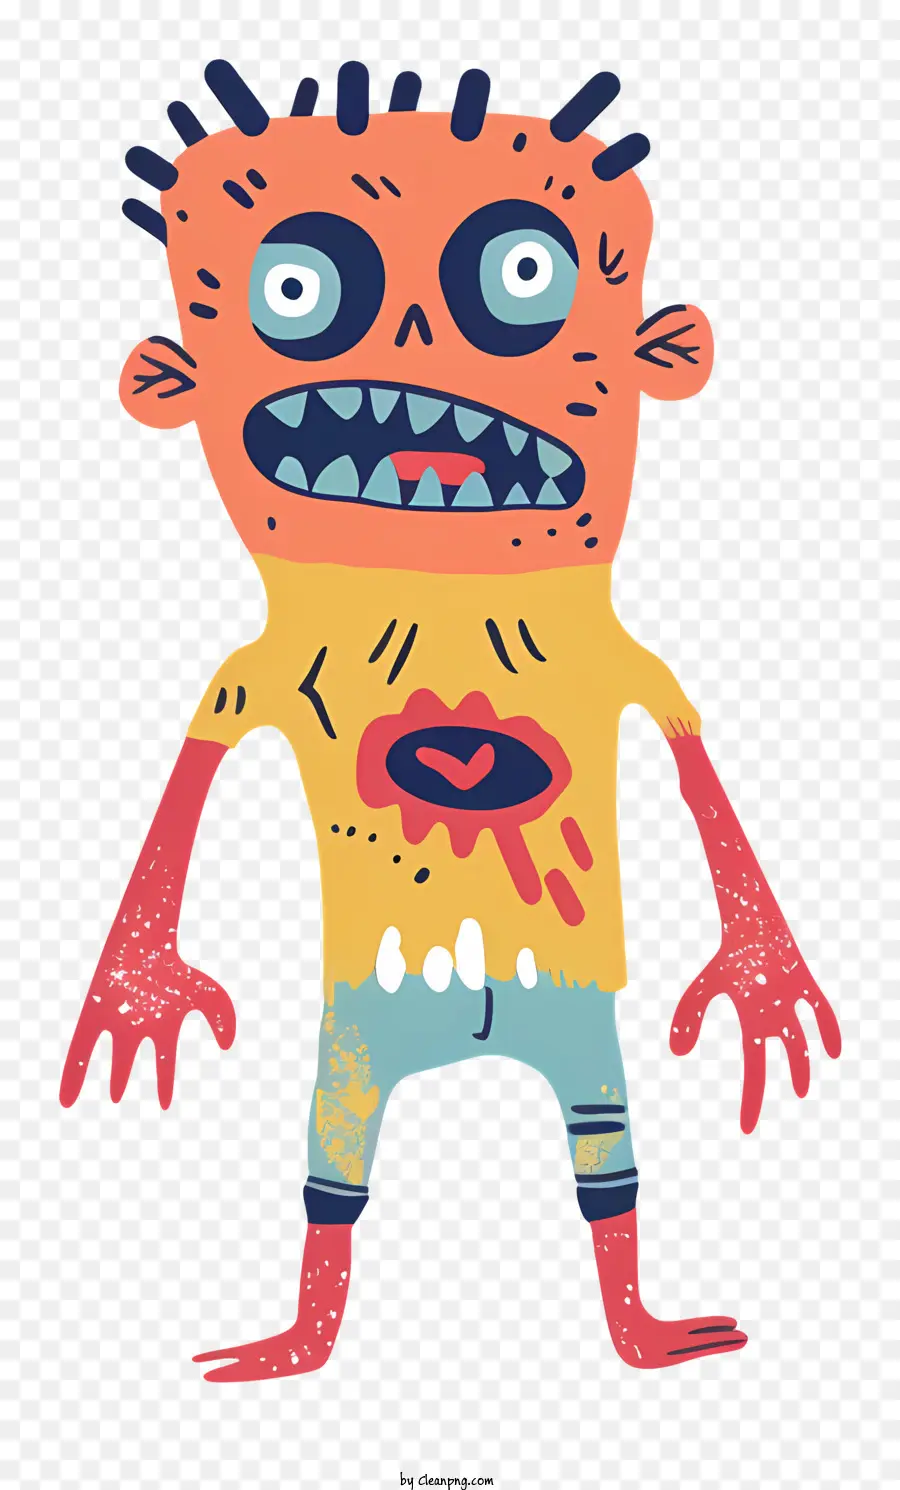 Zombie hoạt hình nhân vật thân thiện sinh vật đáng sợ khuôn mặt màu vàng sáng - Nhân vật thân thiện với khuôn mặt và hành động đáng sợ